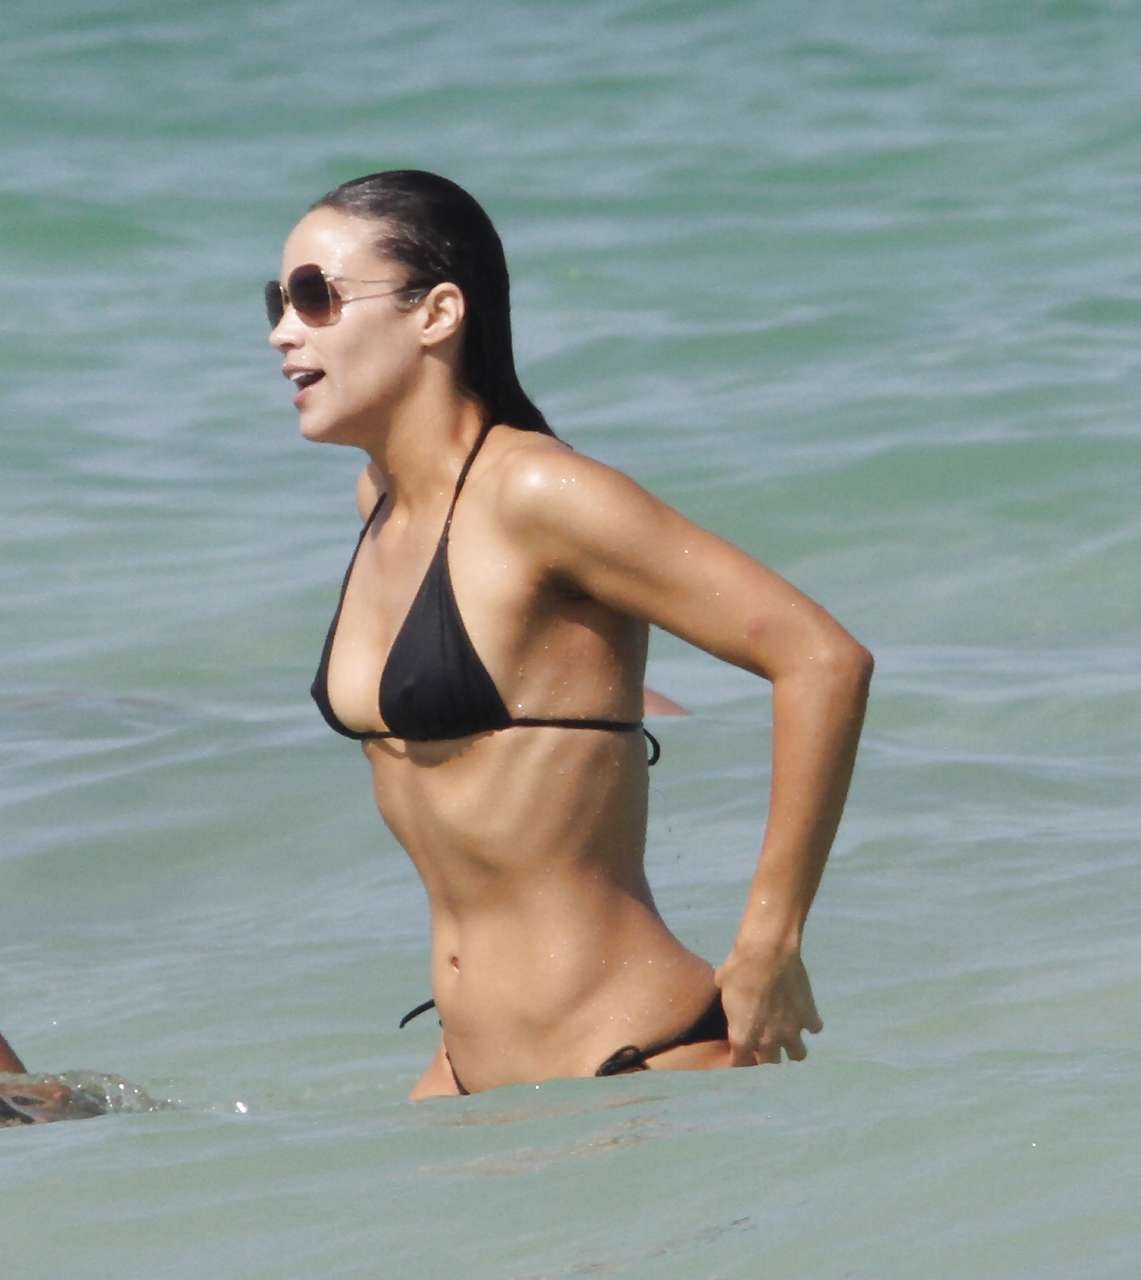 Paula patton très sexy en bikini noir sur la plage photo paparazzi
 #75296583